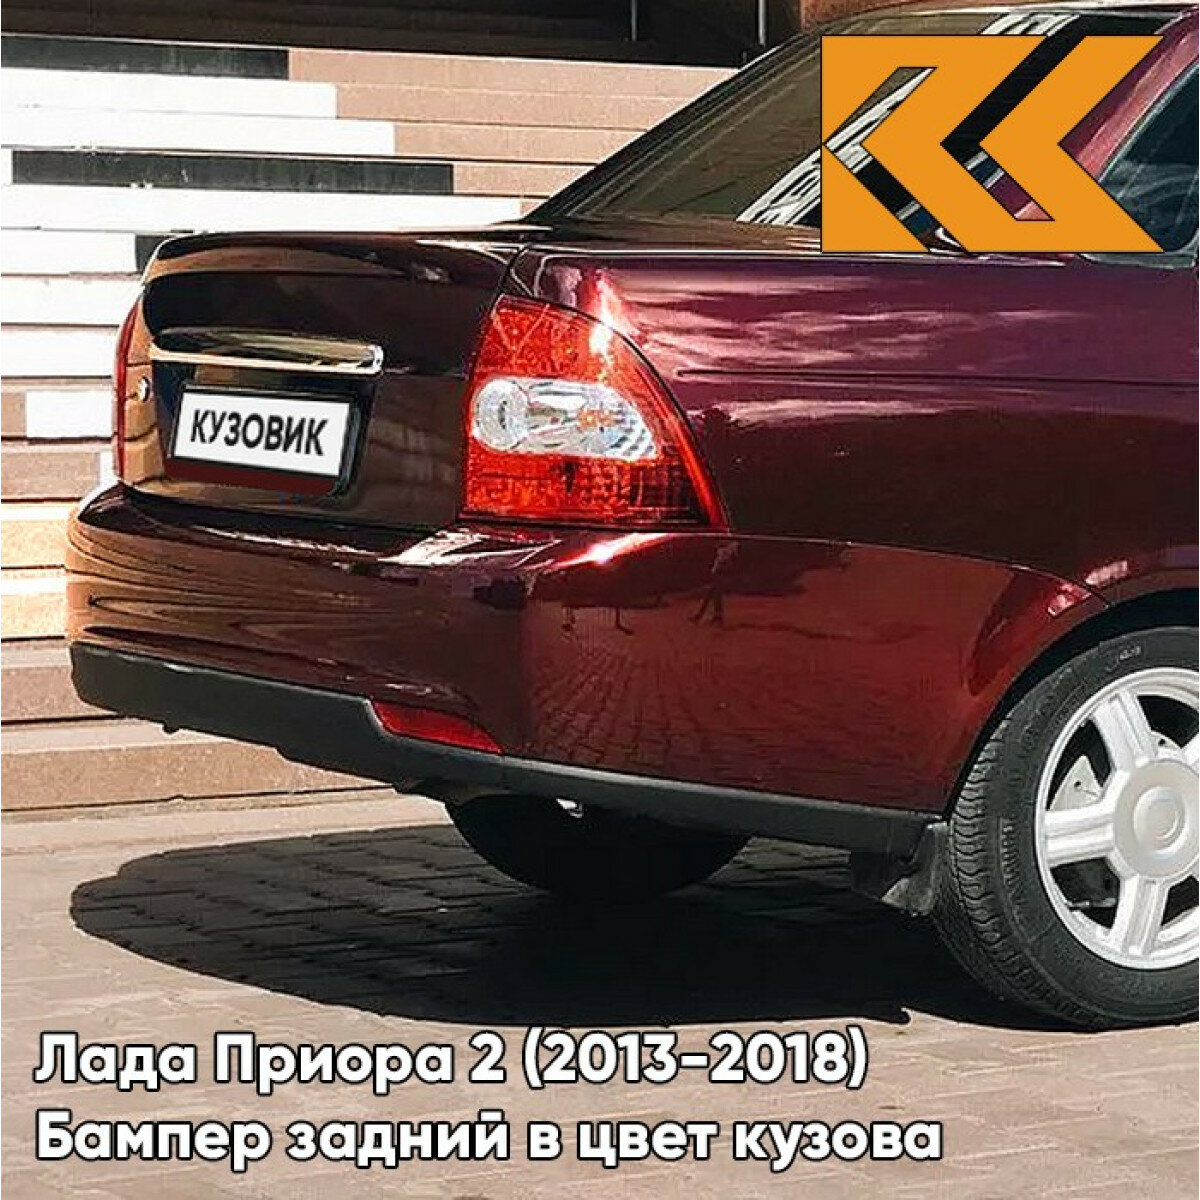 Бампер задний в цвет Лада Приора 2 (2013-2018) седан 125 - Антарес - Красный